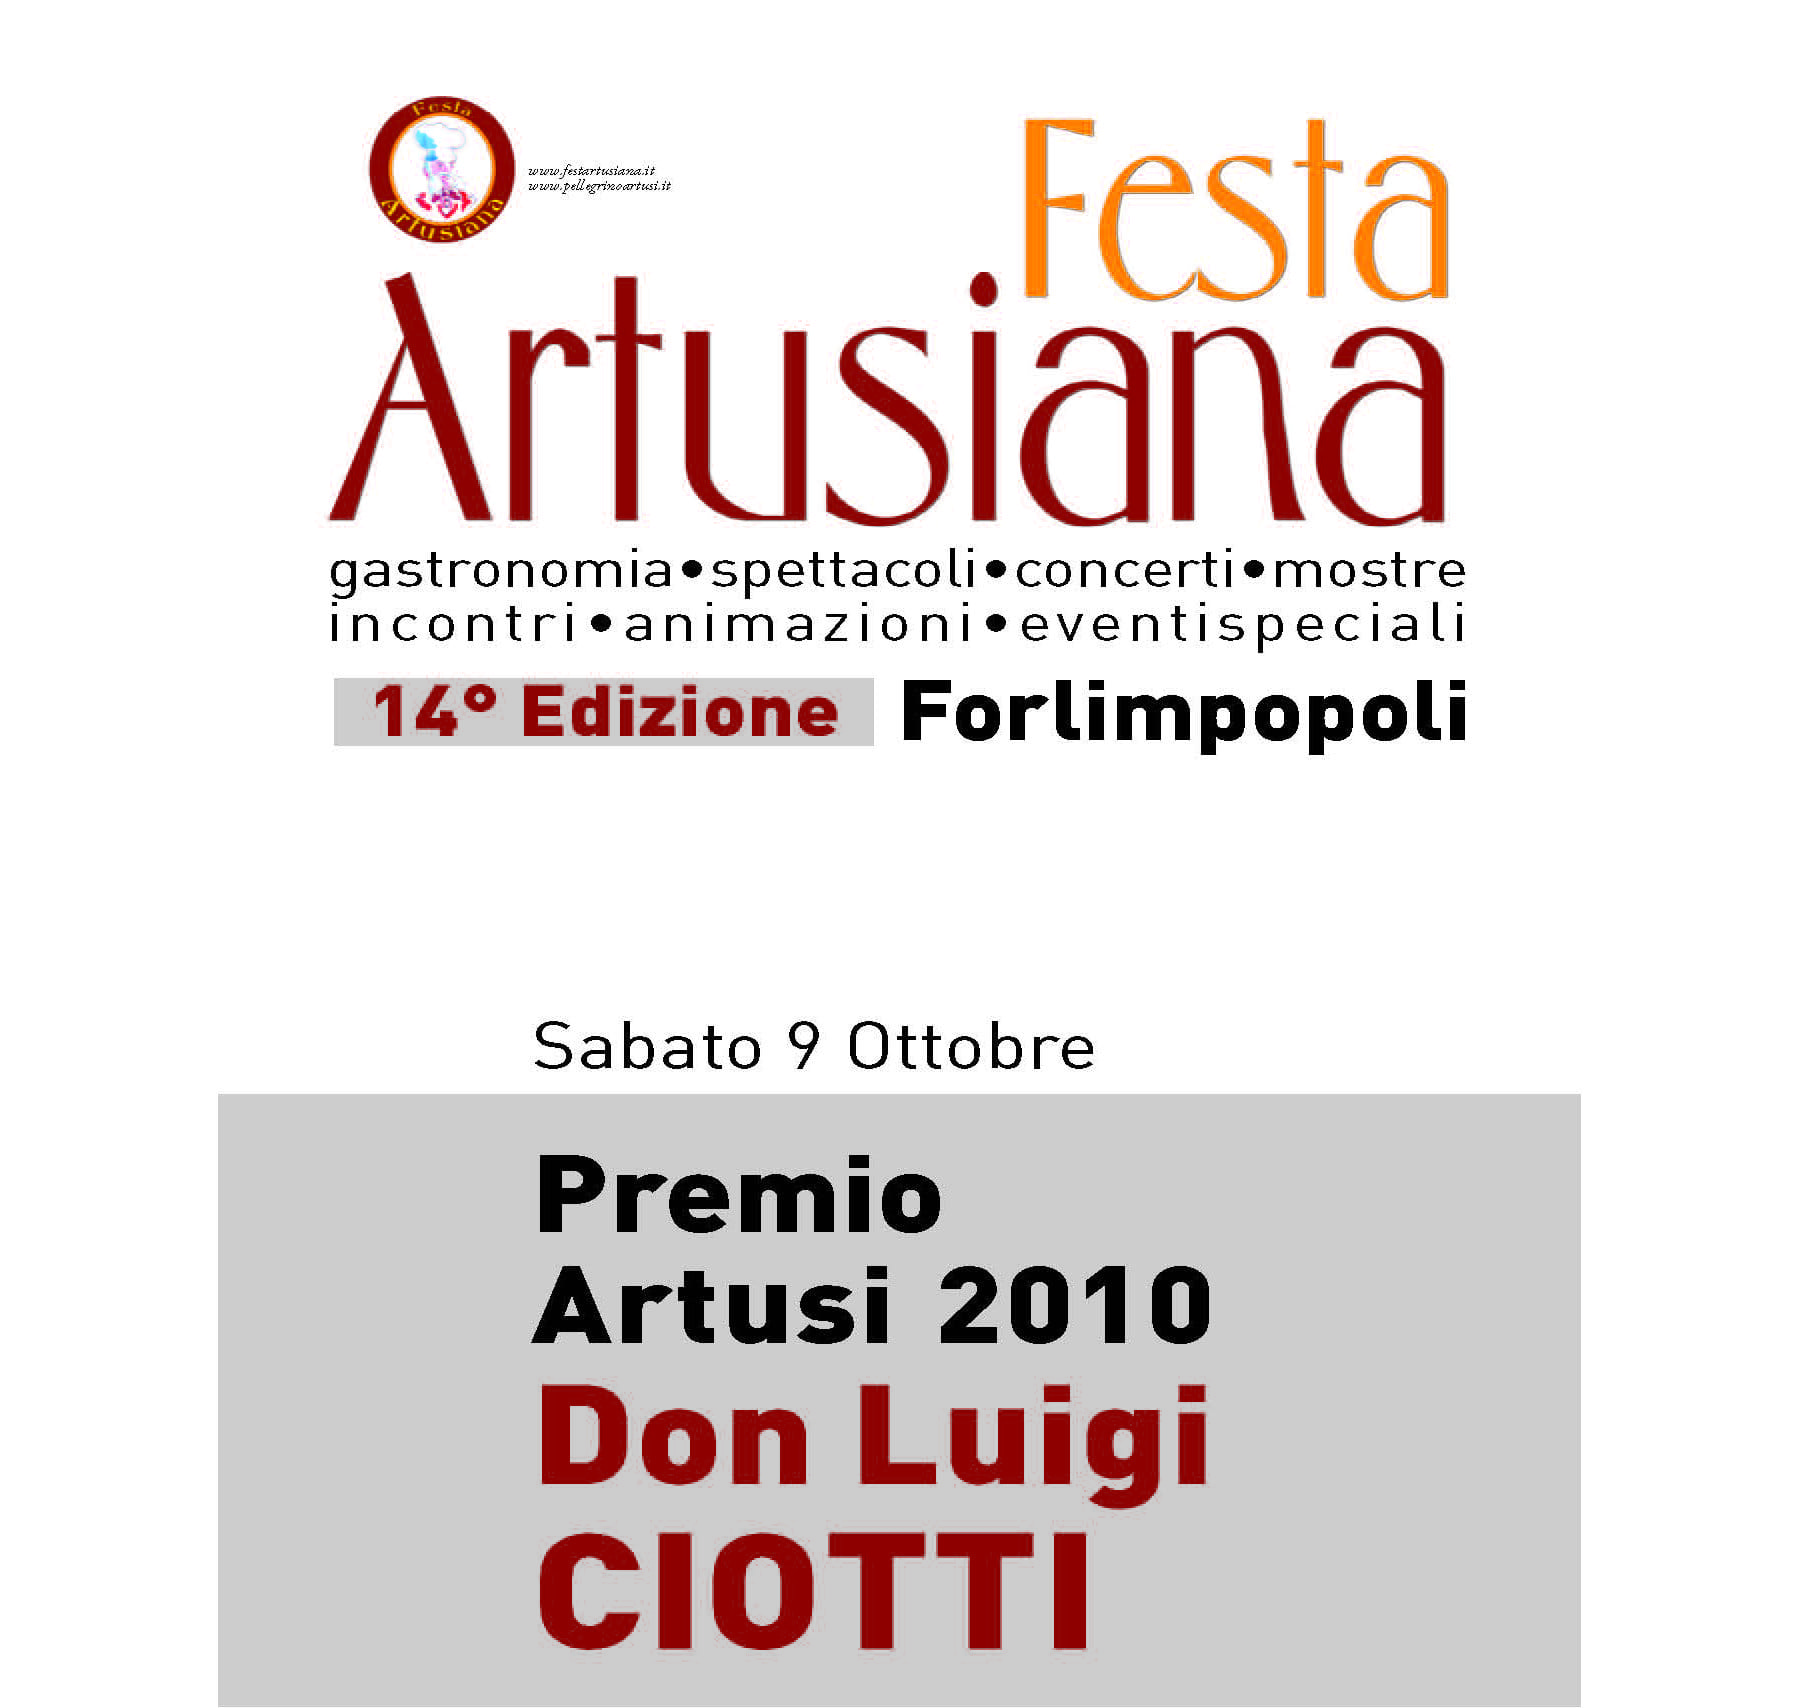 Don Luigi Ciotti, il fondatore di Libera, ritira il Premio Artusi 2010